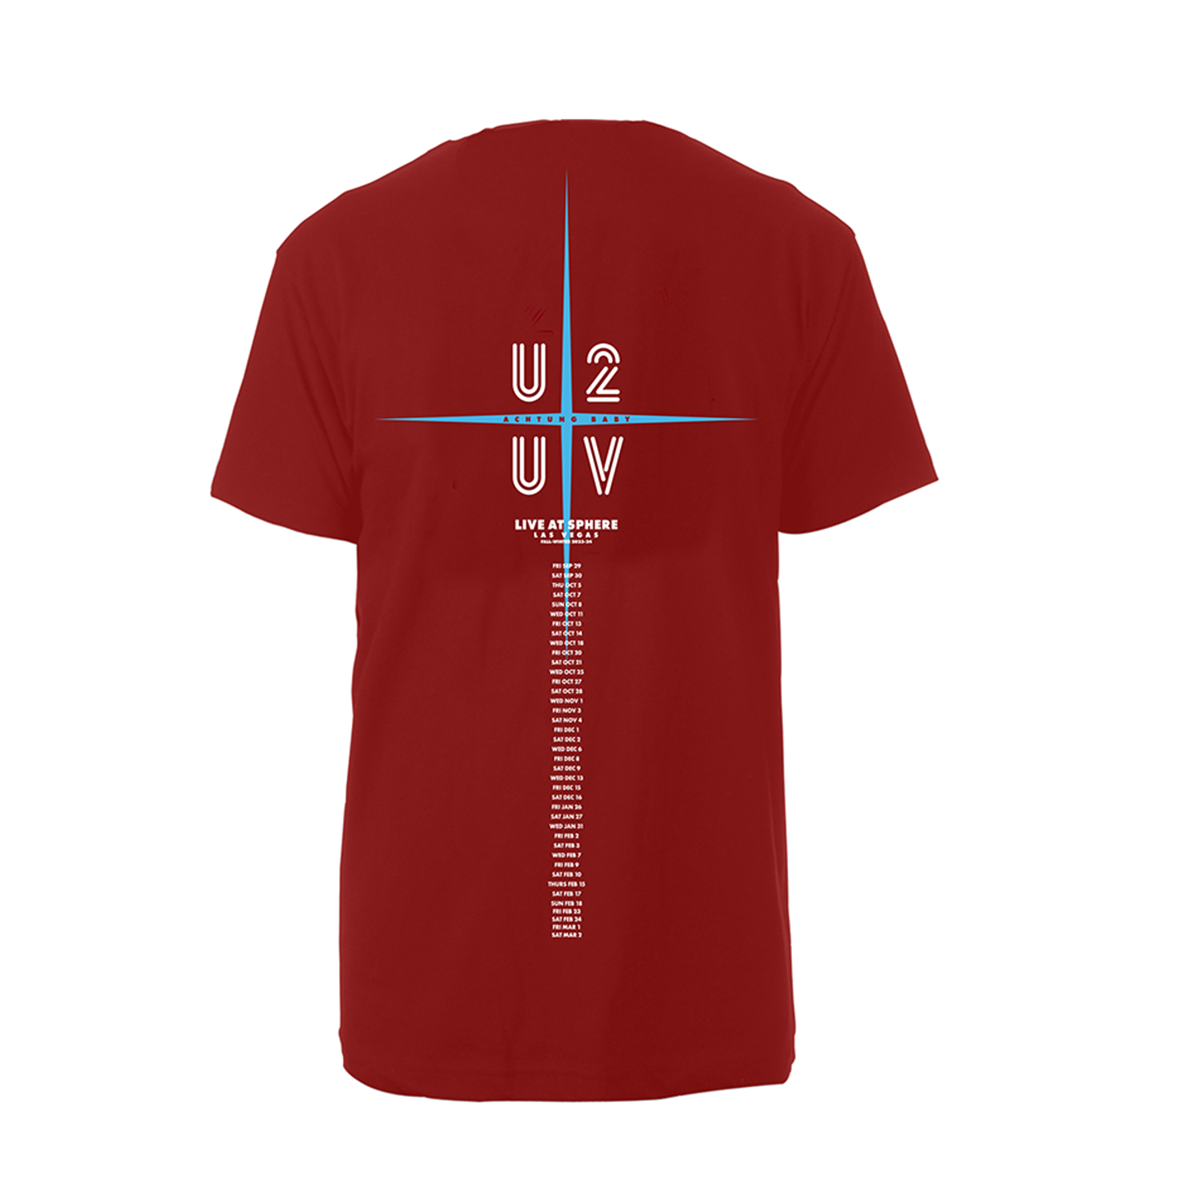 U2 UV Glow Baby T-Shirt